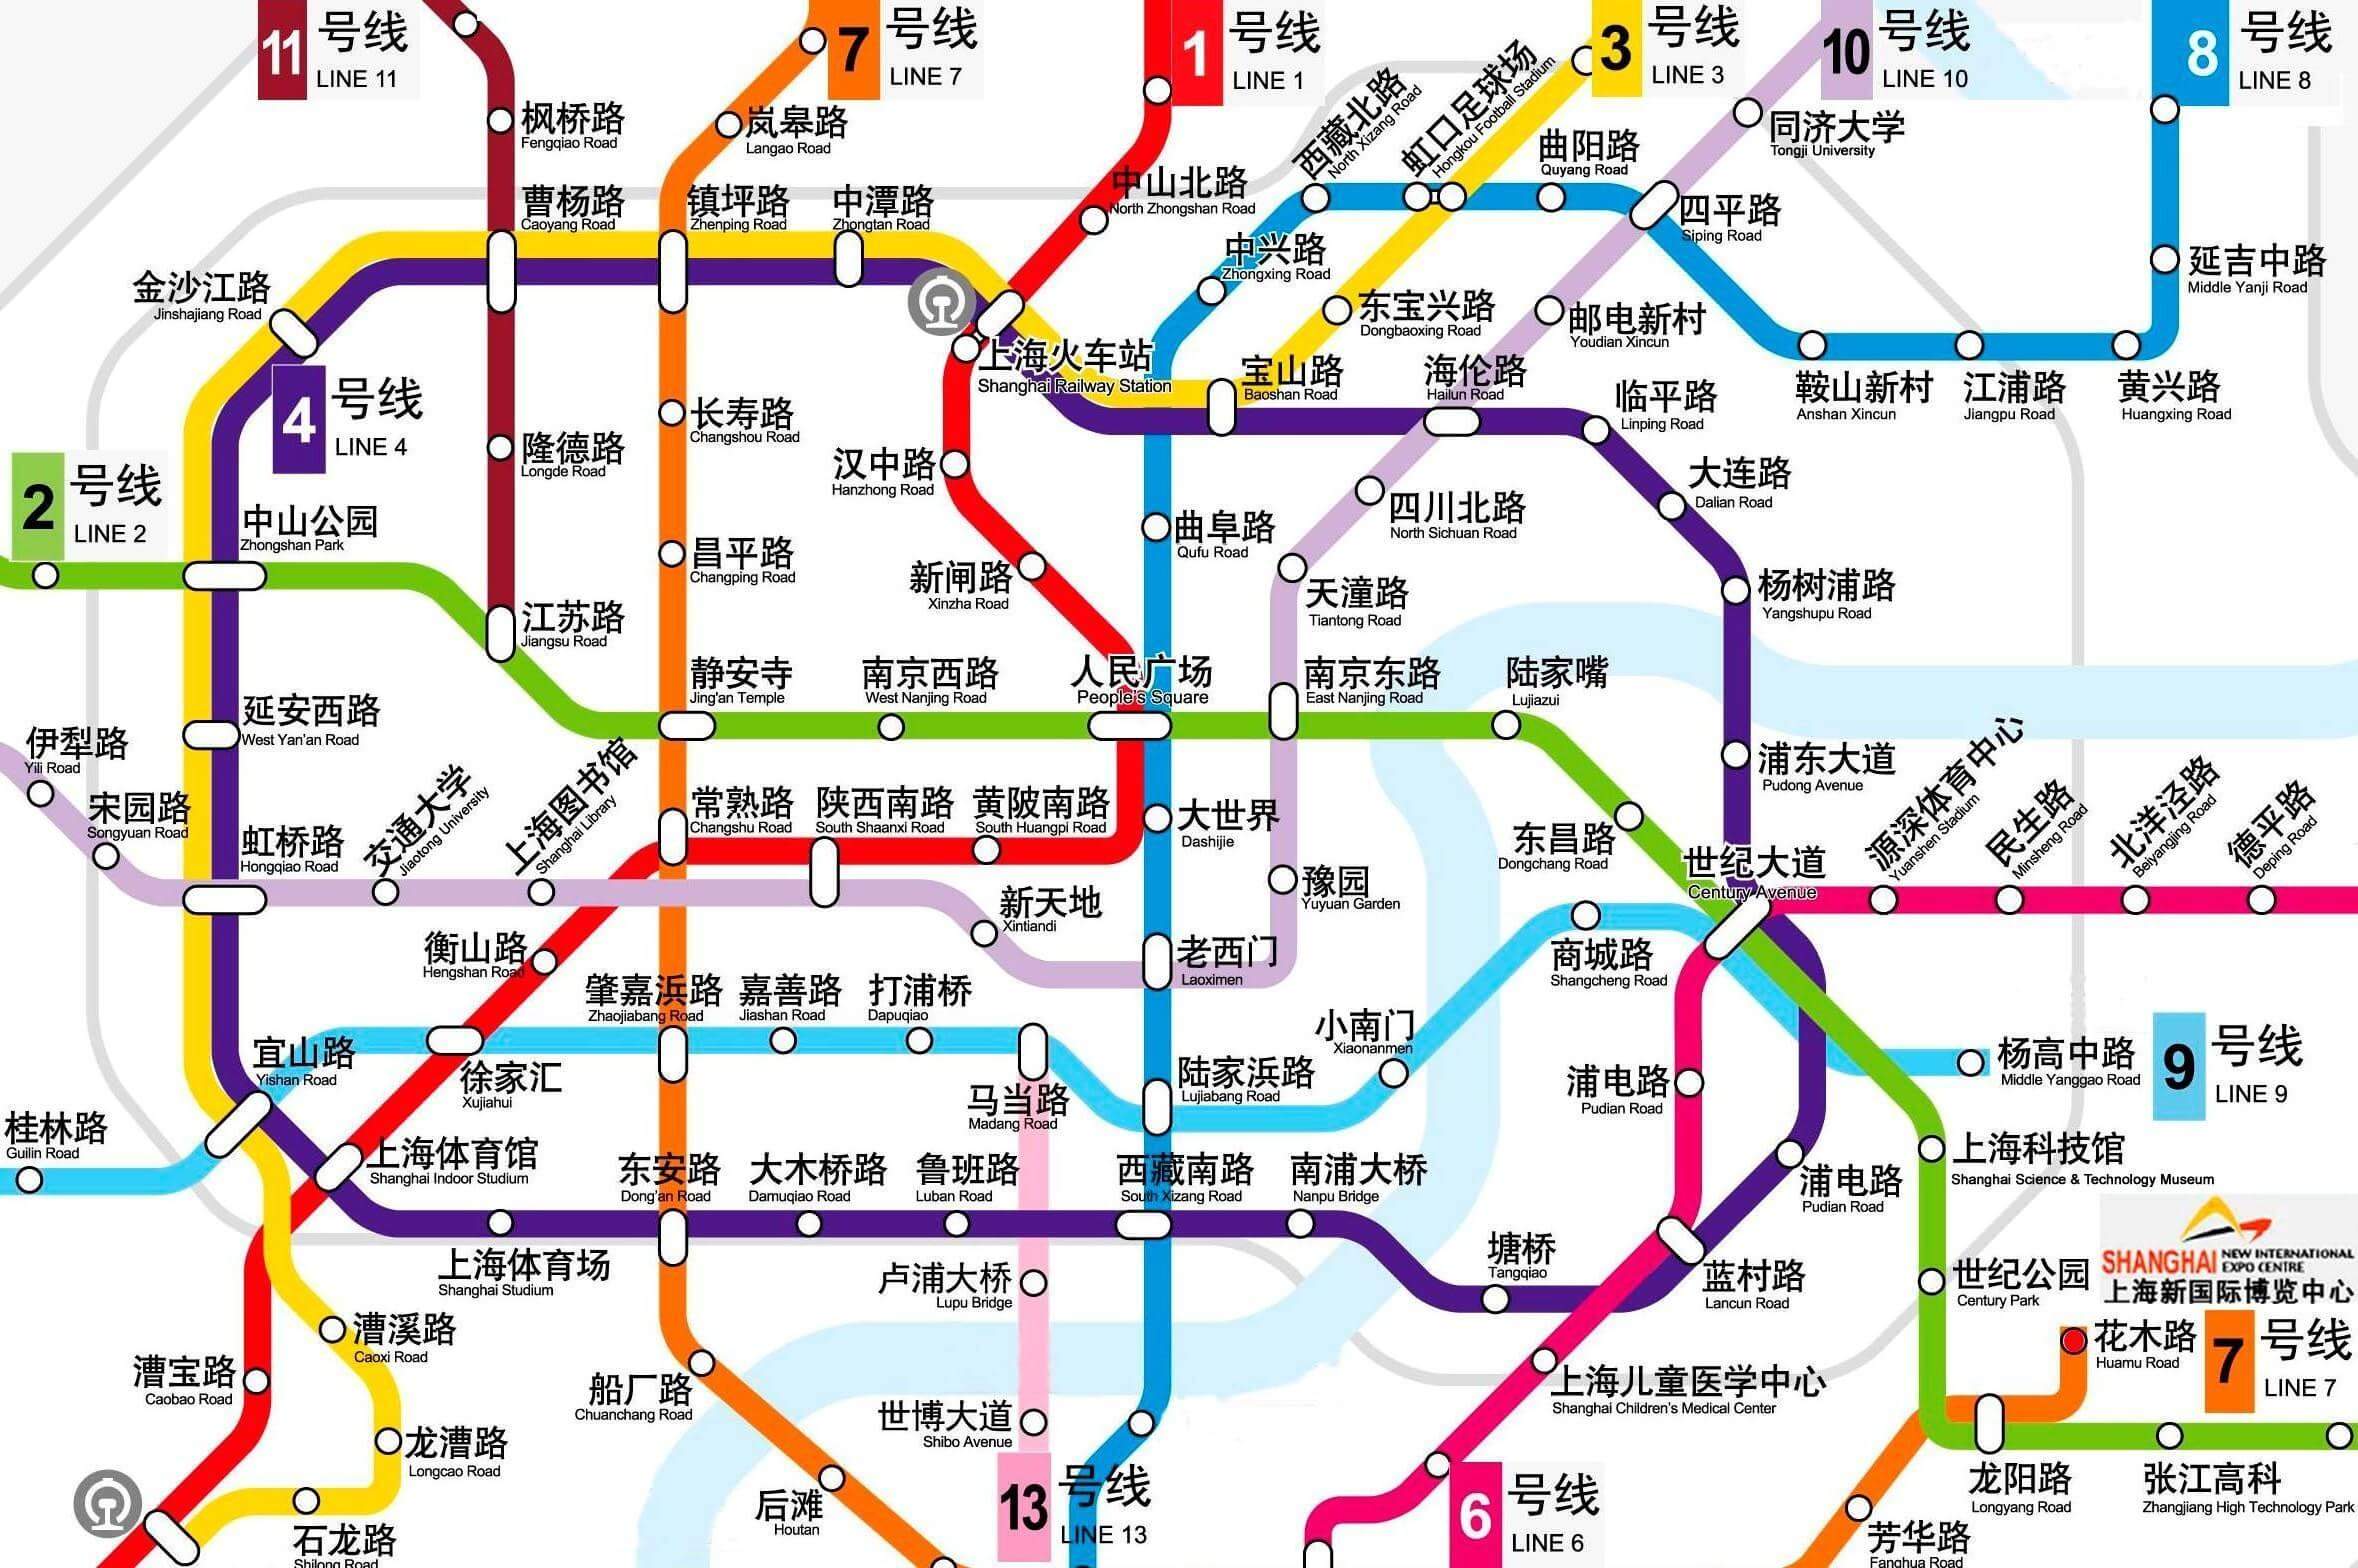 上海地铁是世界范围内线路总长度最长的城市轨道交通系统,也是国际